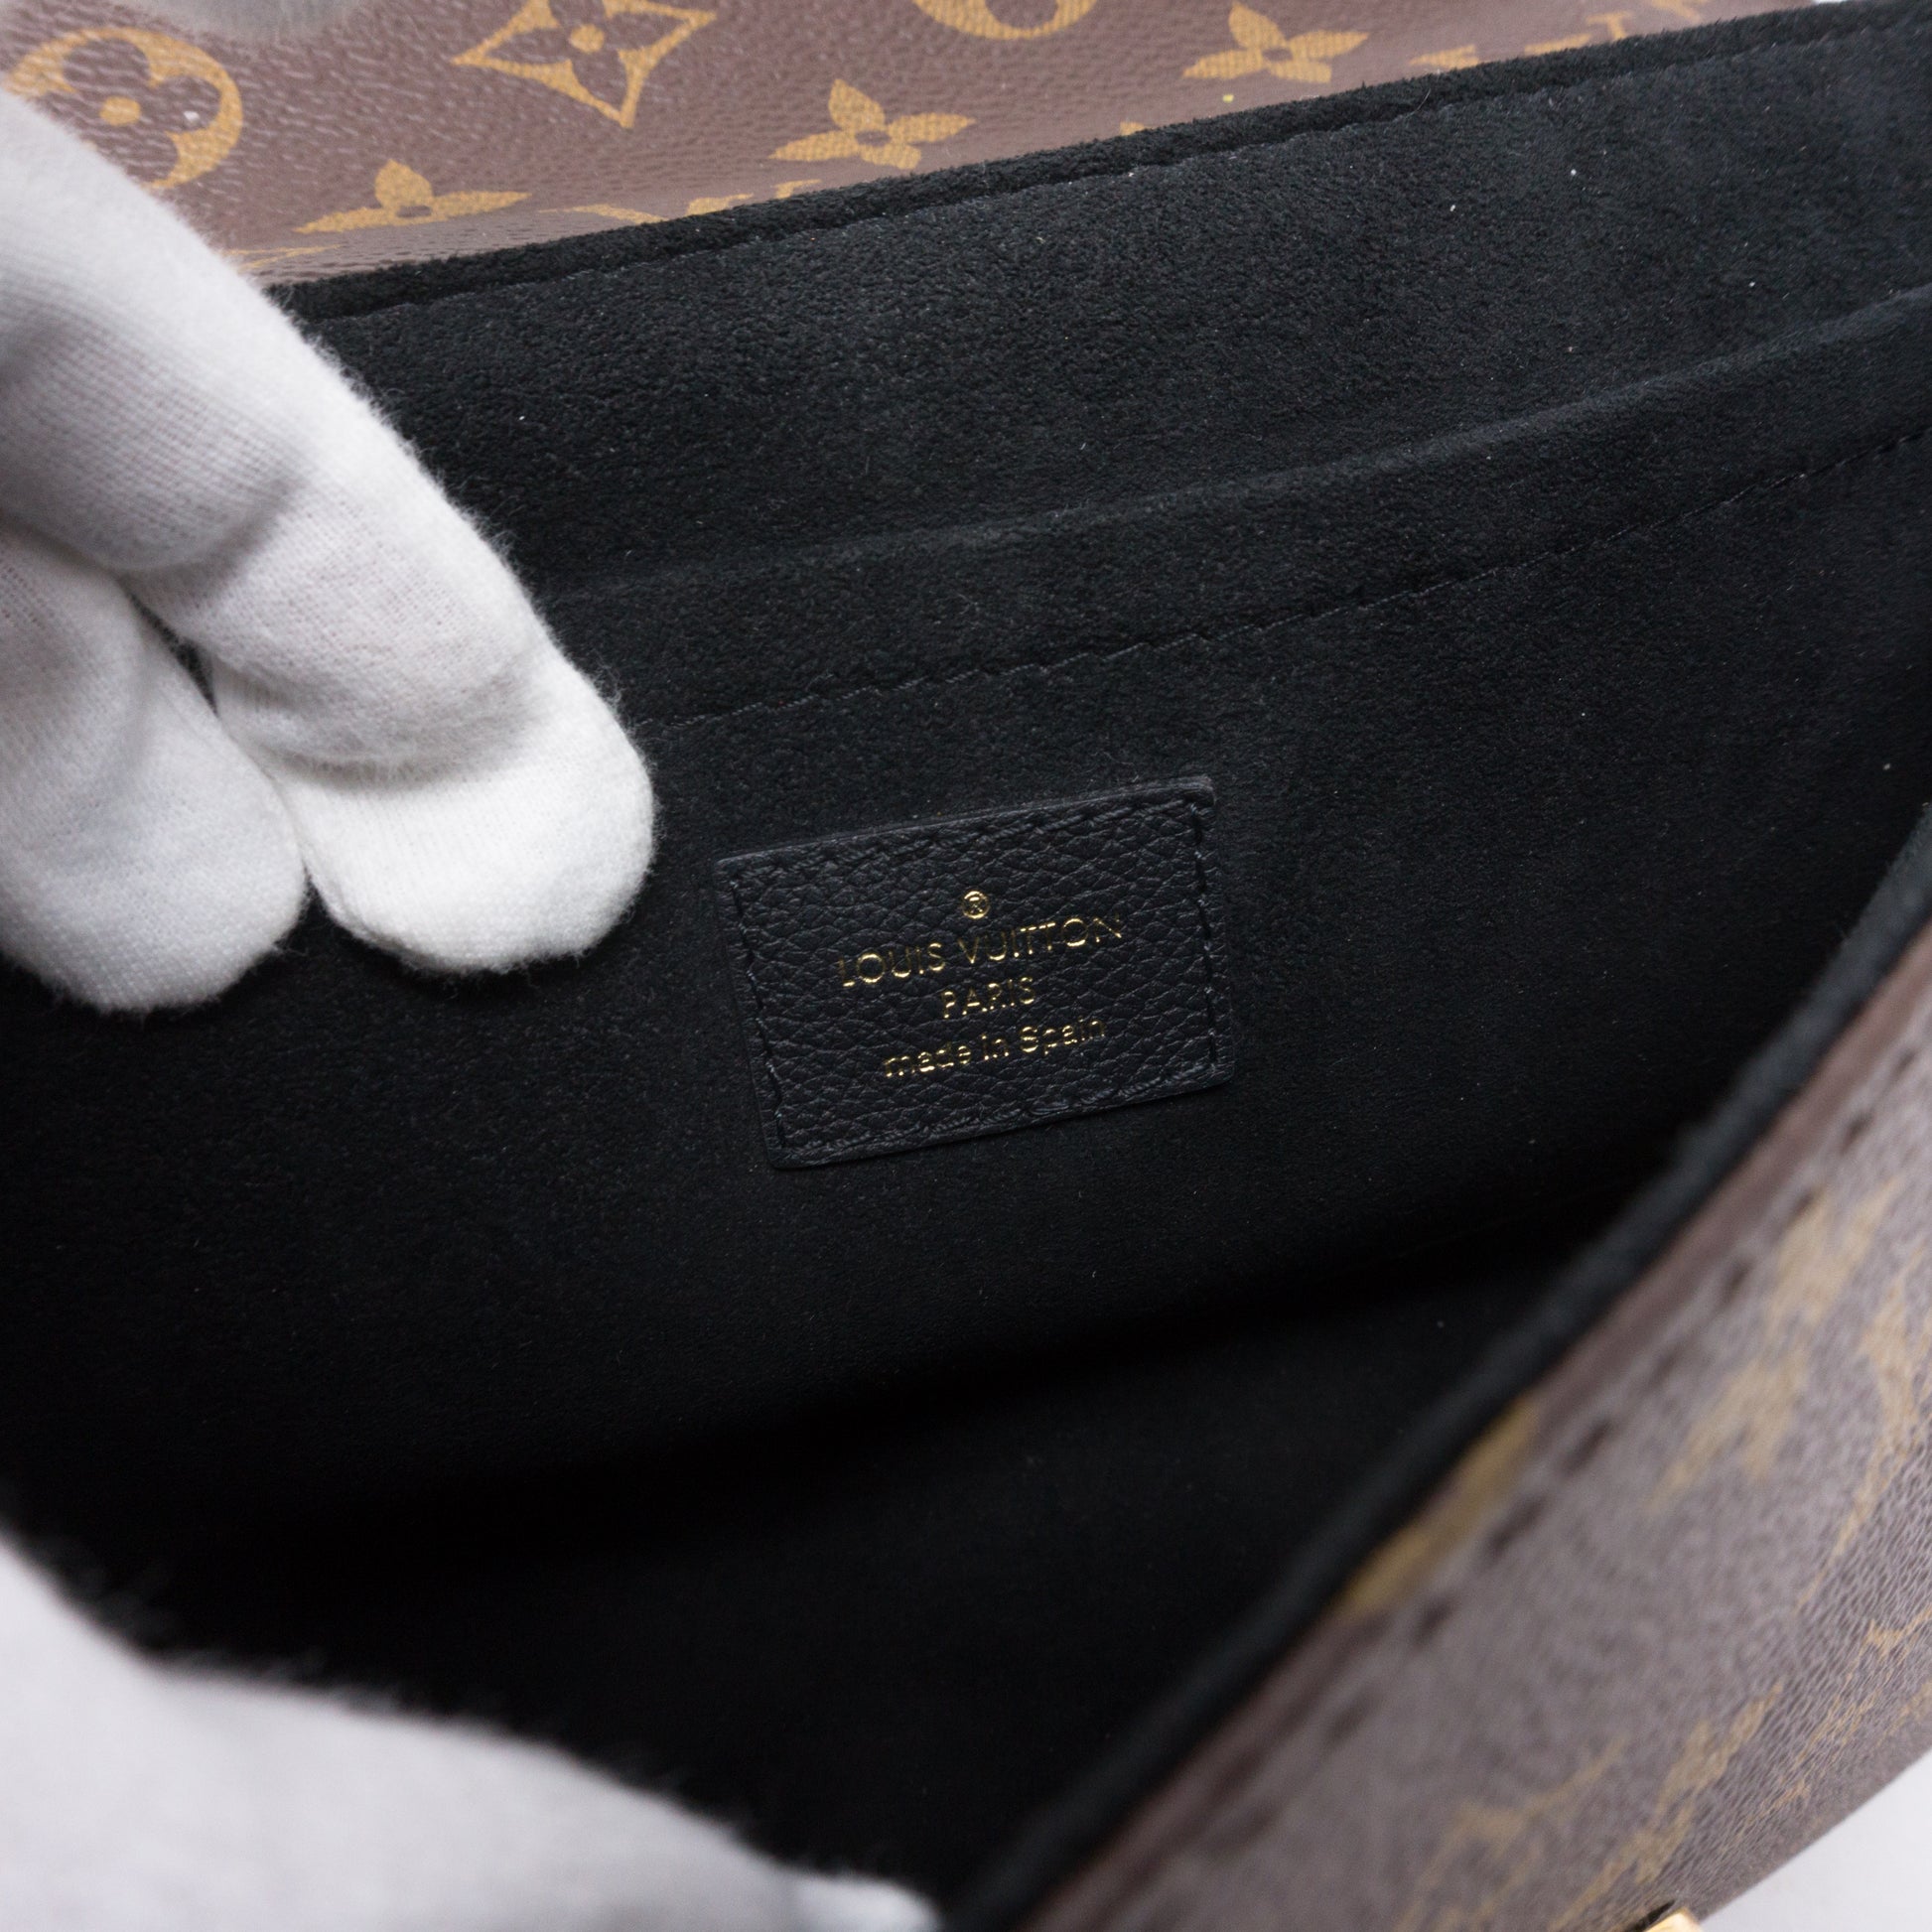 Louis Vuitton Flap Saint Placide Monogram Noir Black in Canvas/Calfskin  with Gold-tone - US